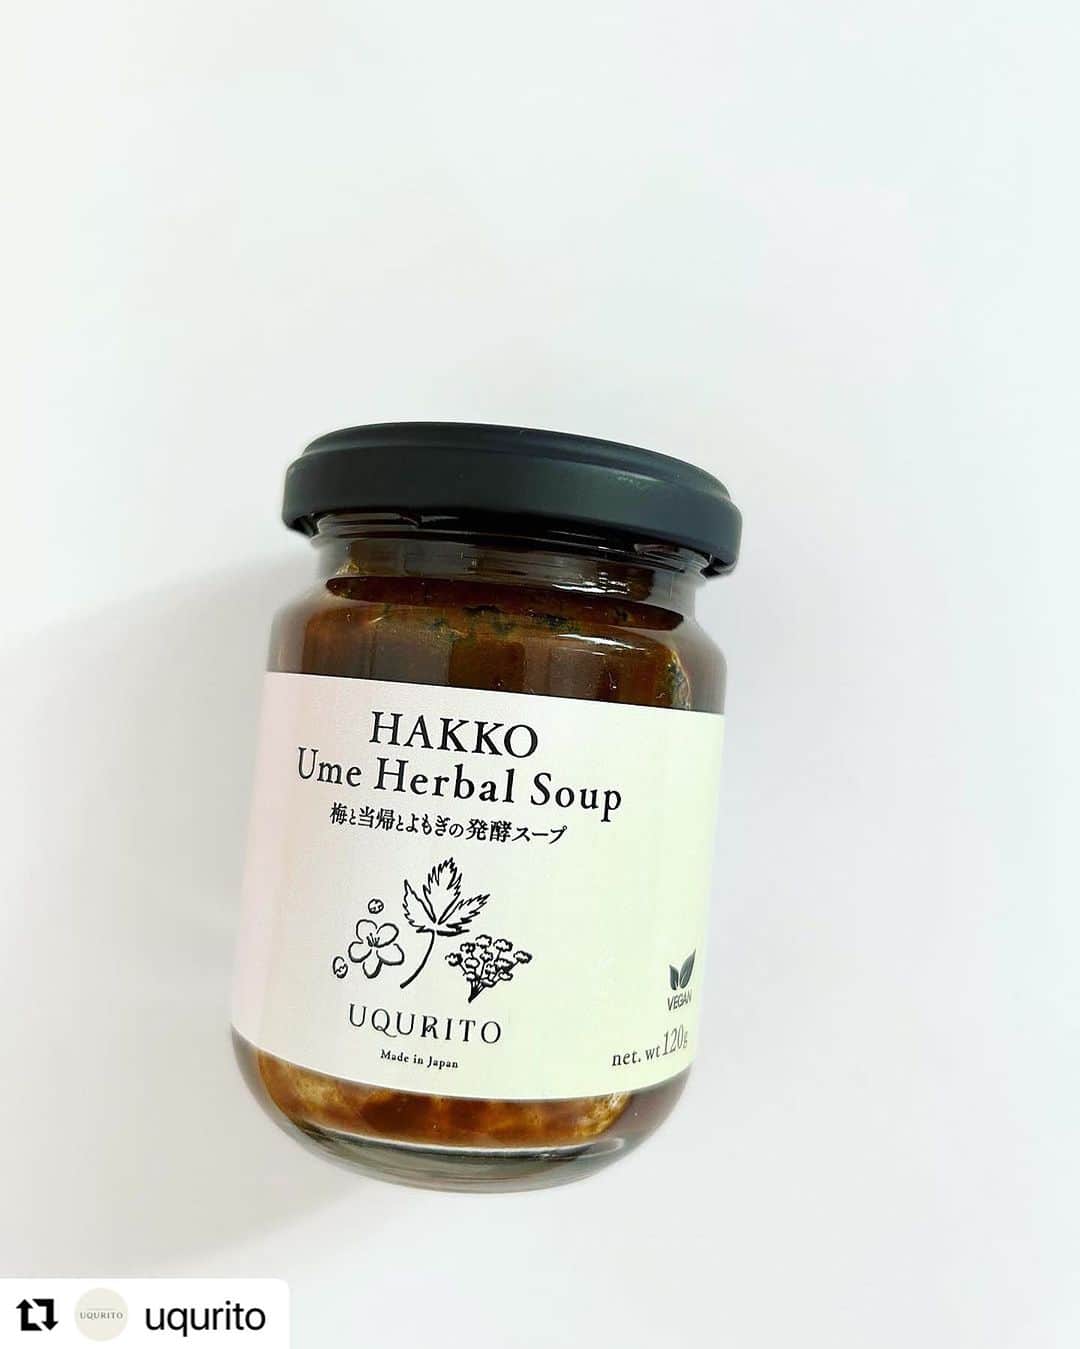 砂賀美希のインスタグラム：「#Repost @uqurito with @use.repost  【HAKKO Ume Herbal Soup 梅と当帰とよもぎの発酵スープ】　 本日よりウェブサイトで先行予約をスタートさせました。  ブランド名はUQURITO ユクリトと申します。 忙しい世の中ではありますが ゆっくり、ユクリトまいりましょう、と名づけました。  「くすりの前にできること」をコンセプトに 未病のうちに自身で簡単に養生できる商品をつくりたい。 コロナ禍で病院に行きにくかった妊婦生活のなかで 無事に元気な赤ちゃんに会えますように、と あれこれ試作を重ねたスープを 産後たくさんの方に試していただきヒアリングさせてもらいながら 時間をかけて完成させました。 温活、腸活、免疫力などがキーワードになるスープになりました。  まだまだ残暑が続きそうですが、身体の中は冷えすぎていませんか？ 植物性乳酸菌と昔ながらの養生法と薬草の力で 疲れた内臓をリセット。 お湯に溶かして飲む、新しい発酵スープです。 お味噌汁を作るのが面倒な朝、起き抜けの身体に 冬は寒さ対策に、夏時期は塩分対策として スプーンの先に少量すくって口に含んでも美味しくいただけます🙌  【こんなとき、このような方におすすめ】  ・いつもと調子が違うなと感じたとき ・寒さを感じるとき ・食欲がないとき  ・旅先や外出先、アウトドアでの即席スープとして  ・忙しい朝のお味噌汁の代わりに  ・ダイエット食の置き換えやファスティングの前後食に  ・飲み過ぎてしまった日の翌朝に ・夏場の塩分補給に   発送が8月のみ8/28(月)からとなりますが9月からは3-5日の間で発送可能になります。 詳しくはプロフィールのWebサイトをご覧ください。  #免疫ケア #免疫力アップ #菌活 #乳酸菌 #植物性乳酸菌 #食薬 #自然派ママ #ナチュラル好き #自然派 #発酵スープ #発酵 #発酵食品 #発酵食 #温活 #腸活 #冷え #冷えとり女子 #温め女子 #妊活女子 #妊娠中の食事 #妊婦におすすめ  #赤ちゃんがほしい #貧血女子 #貧血予防 #妊活ごはん  #自然食 #ビーガン #産前産後  #産後ママ」